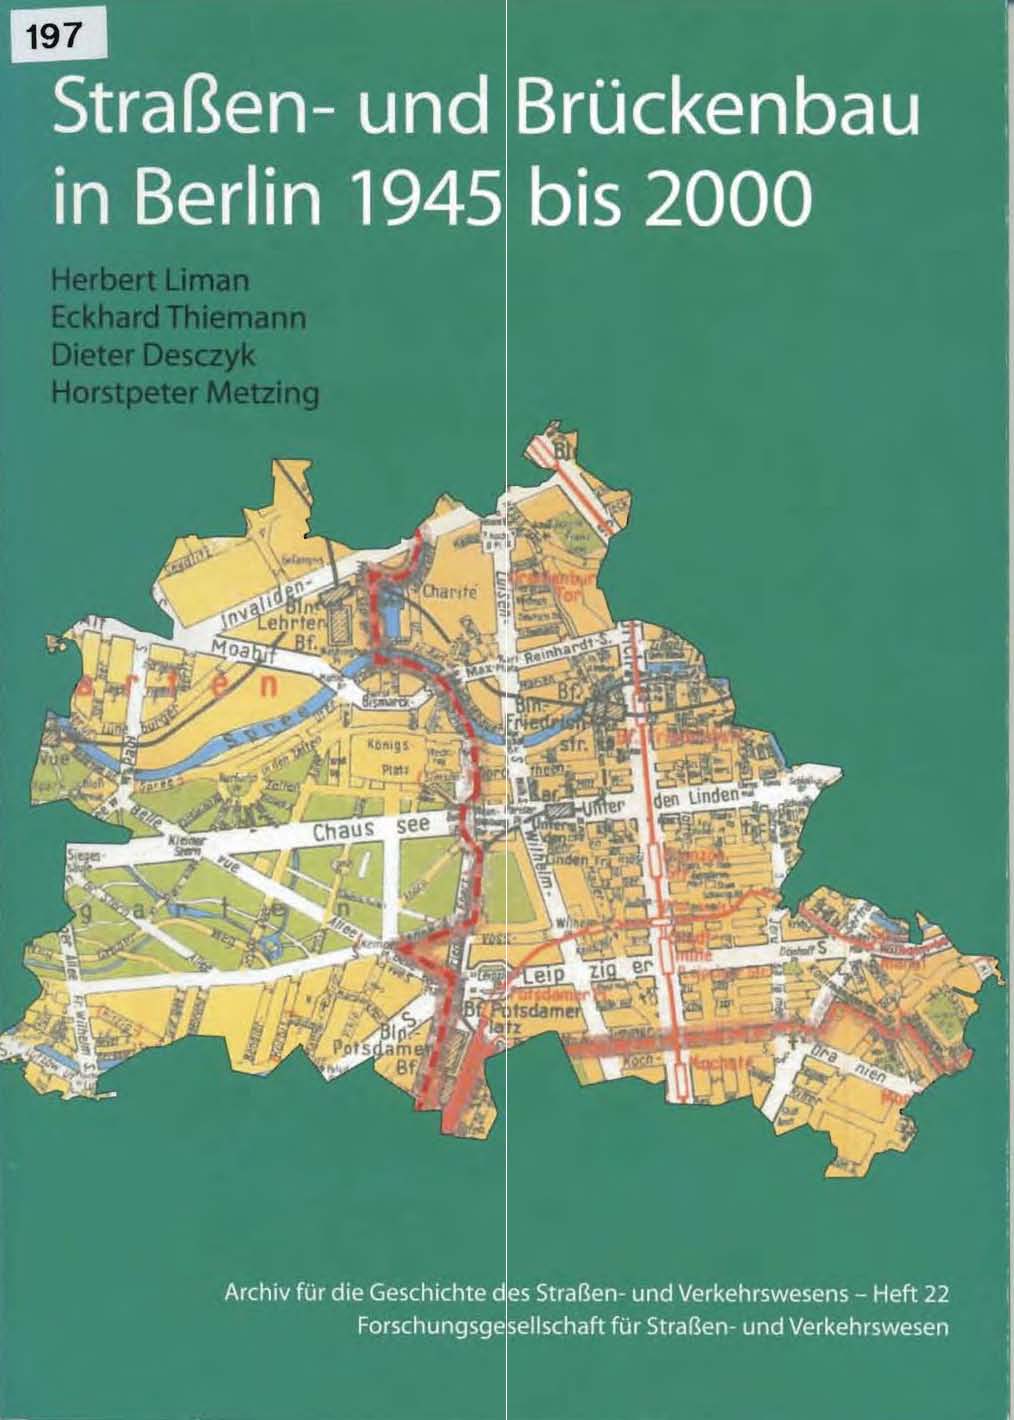 Straßen- und Brückenbau in Berlin 1945 bis 2000